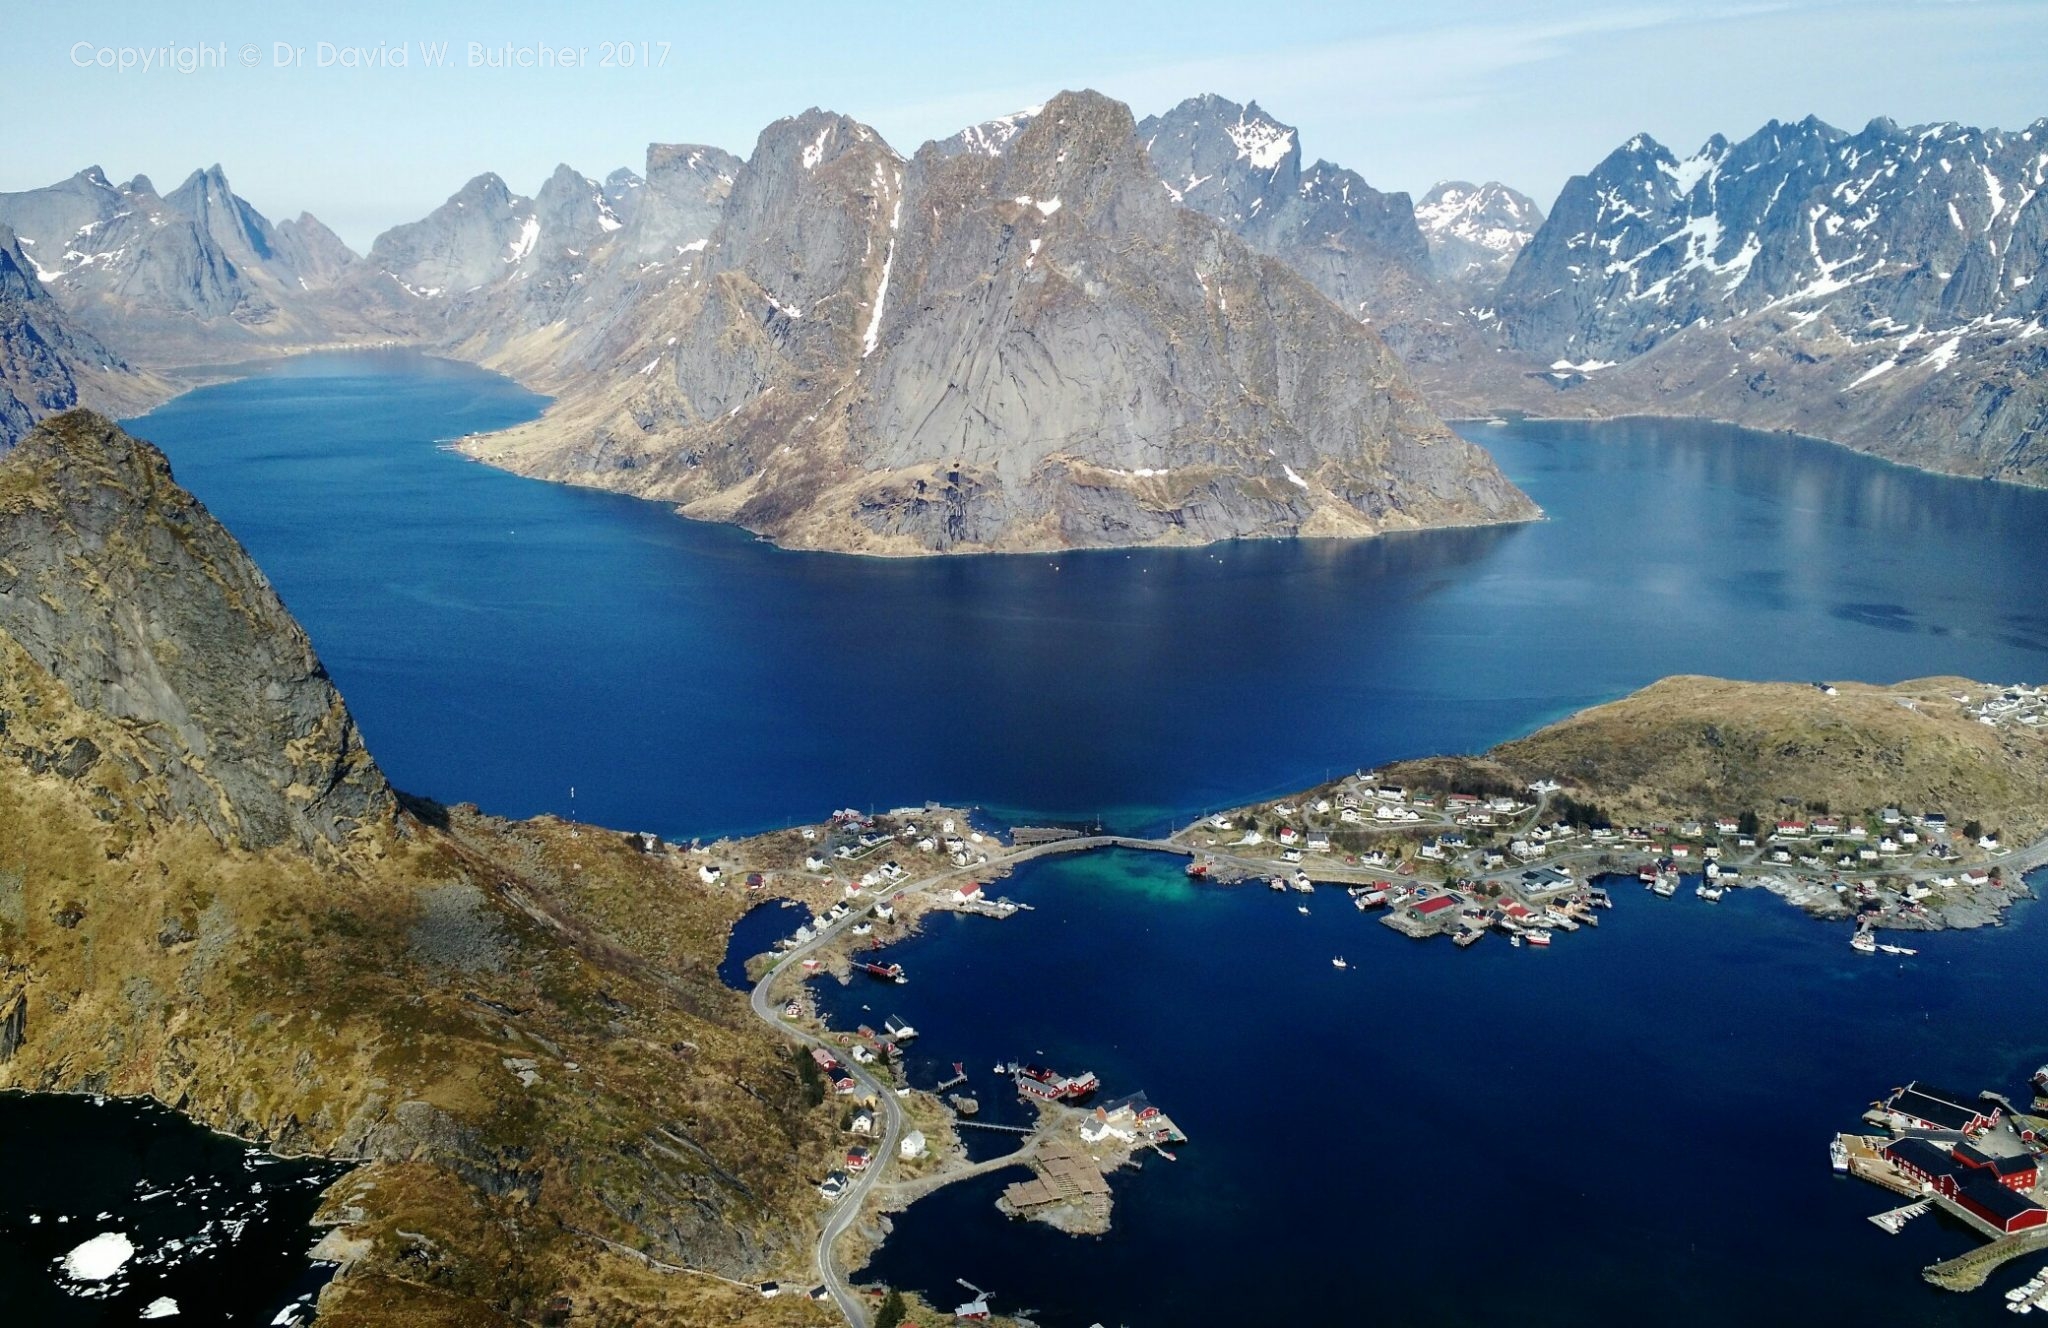 Norway Photo Trip, Reinebringen Mountain View - Dave Butcher